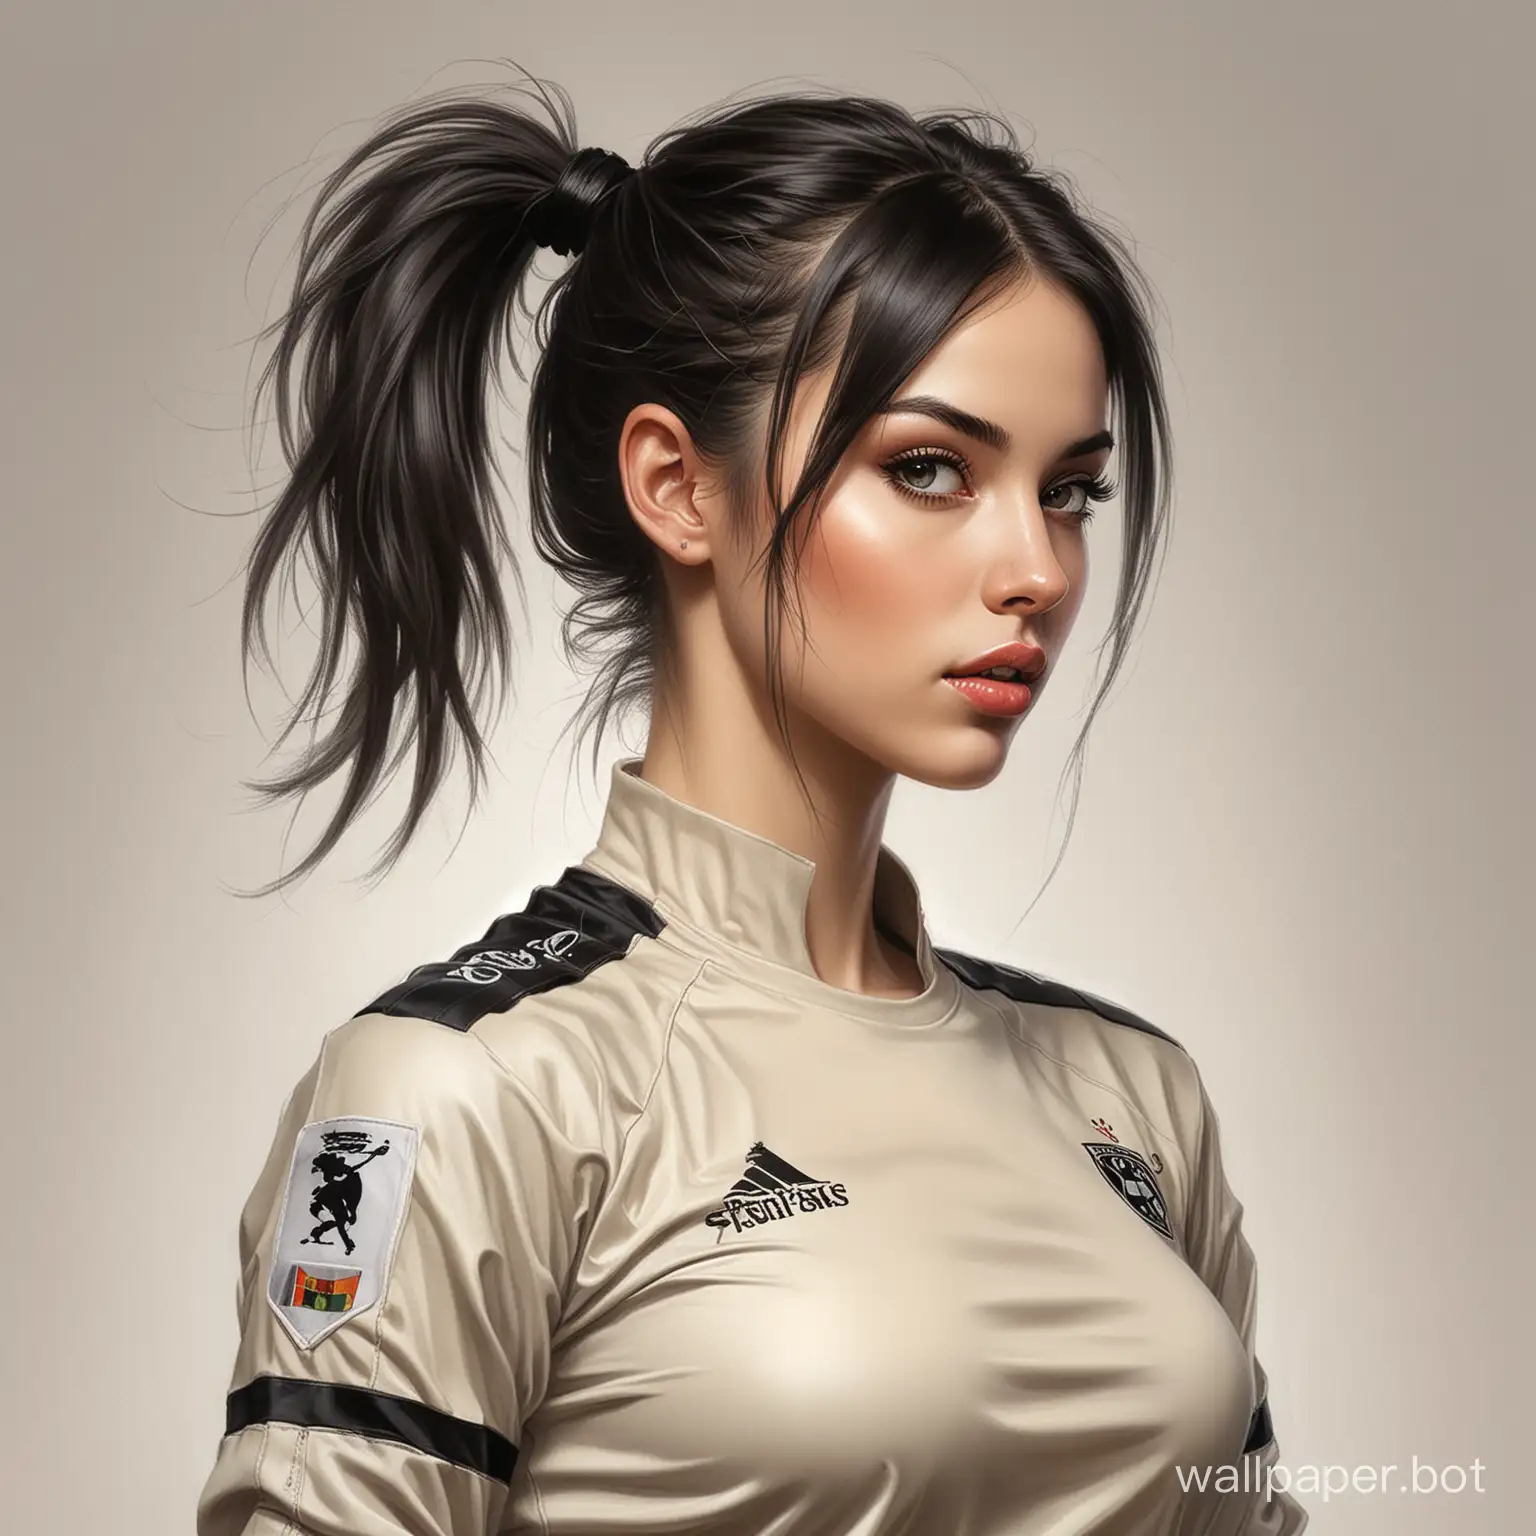 DarkHaired-Beauty-Oksana-Pochepa-in-BeigeBlack-Soccer-Uniform-Portrait